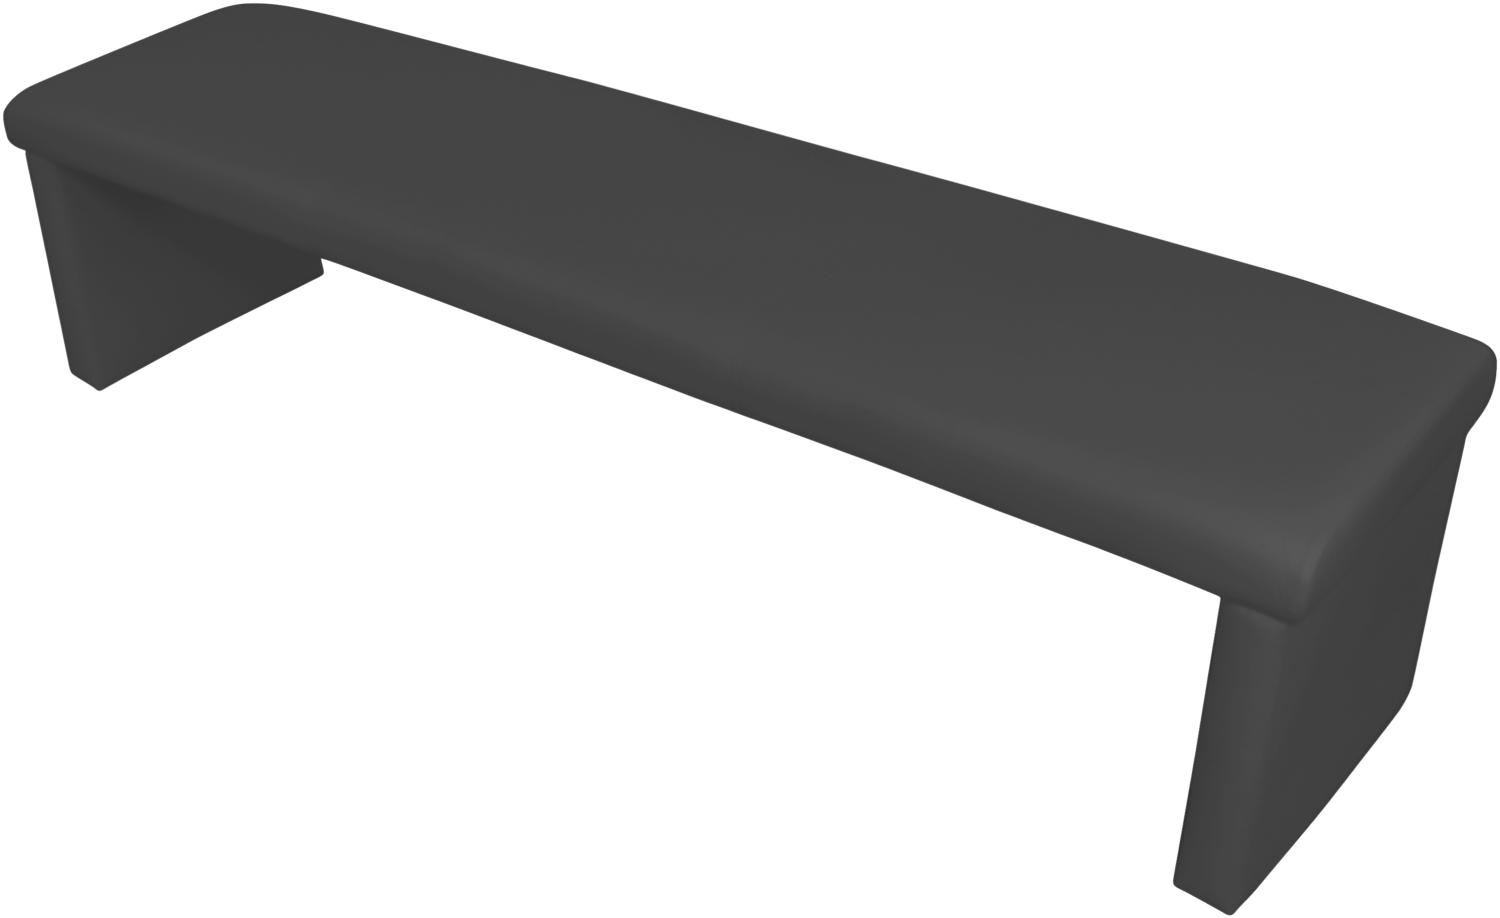 byLIVING Vorbank Cardy / Moderne Sitzbank mit Kunstleder in schwarz / Bank ohne Rückenlehne / B 180, H 48, T 45 cm Bild 1